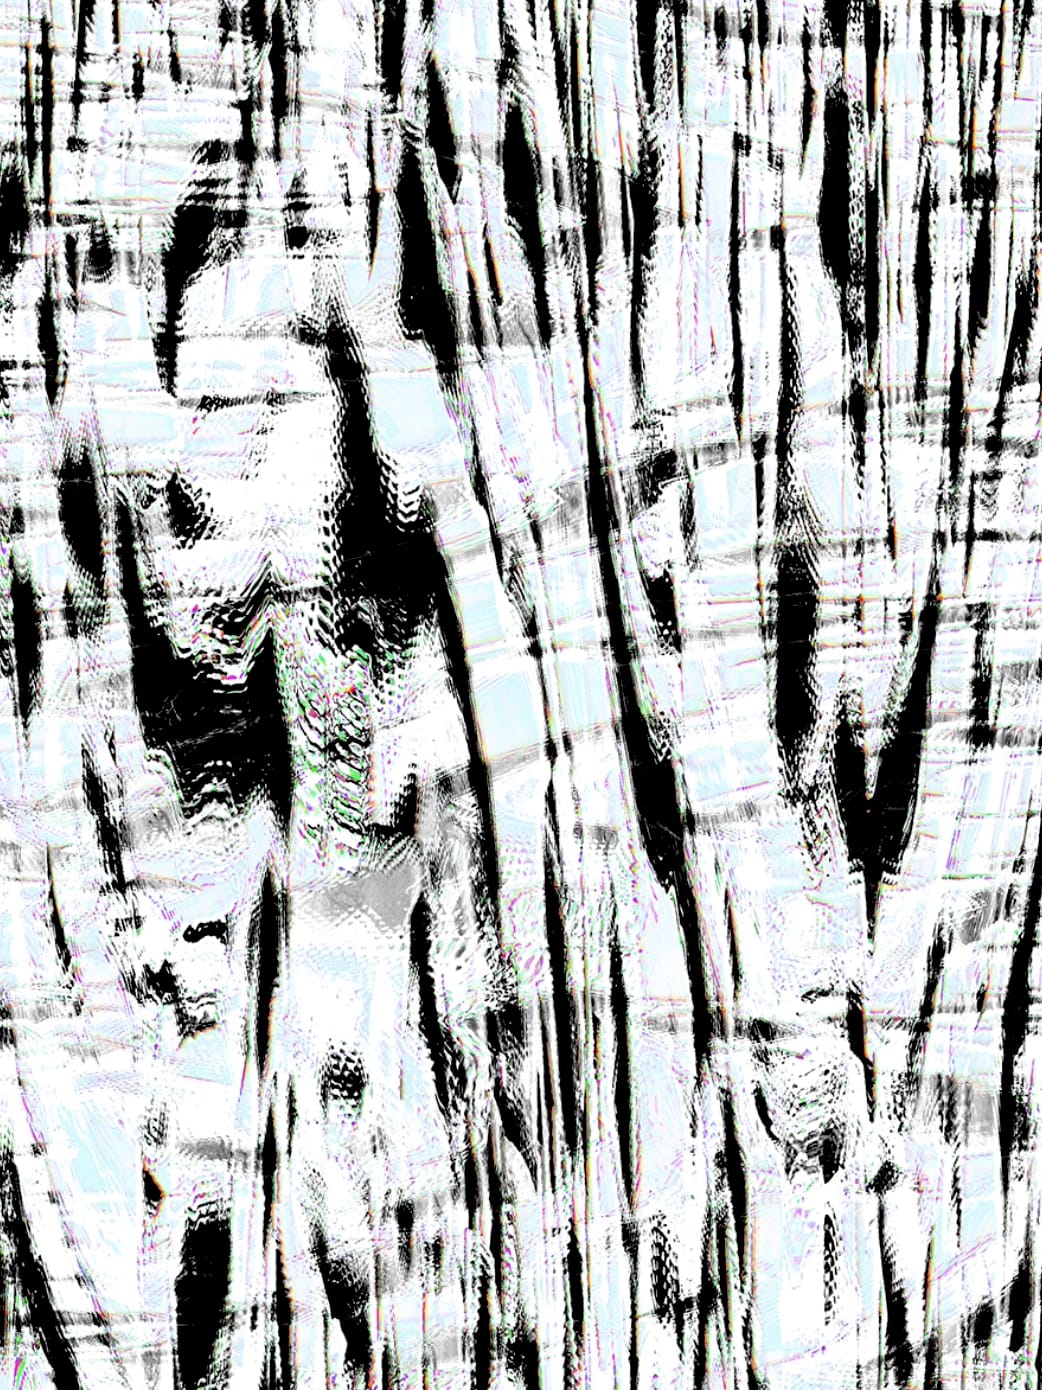 Fotografia, Scanografia di Michael Monney alias acylmx, Immagine astratta in bianco e nero